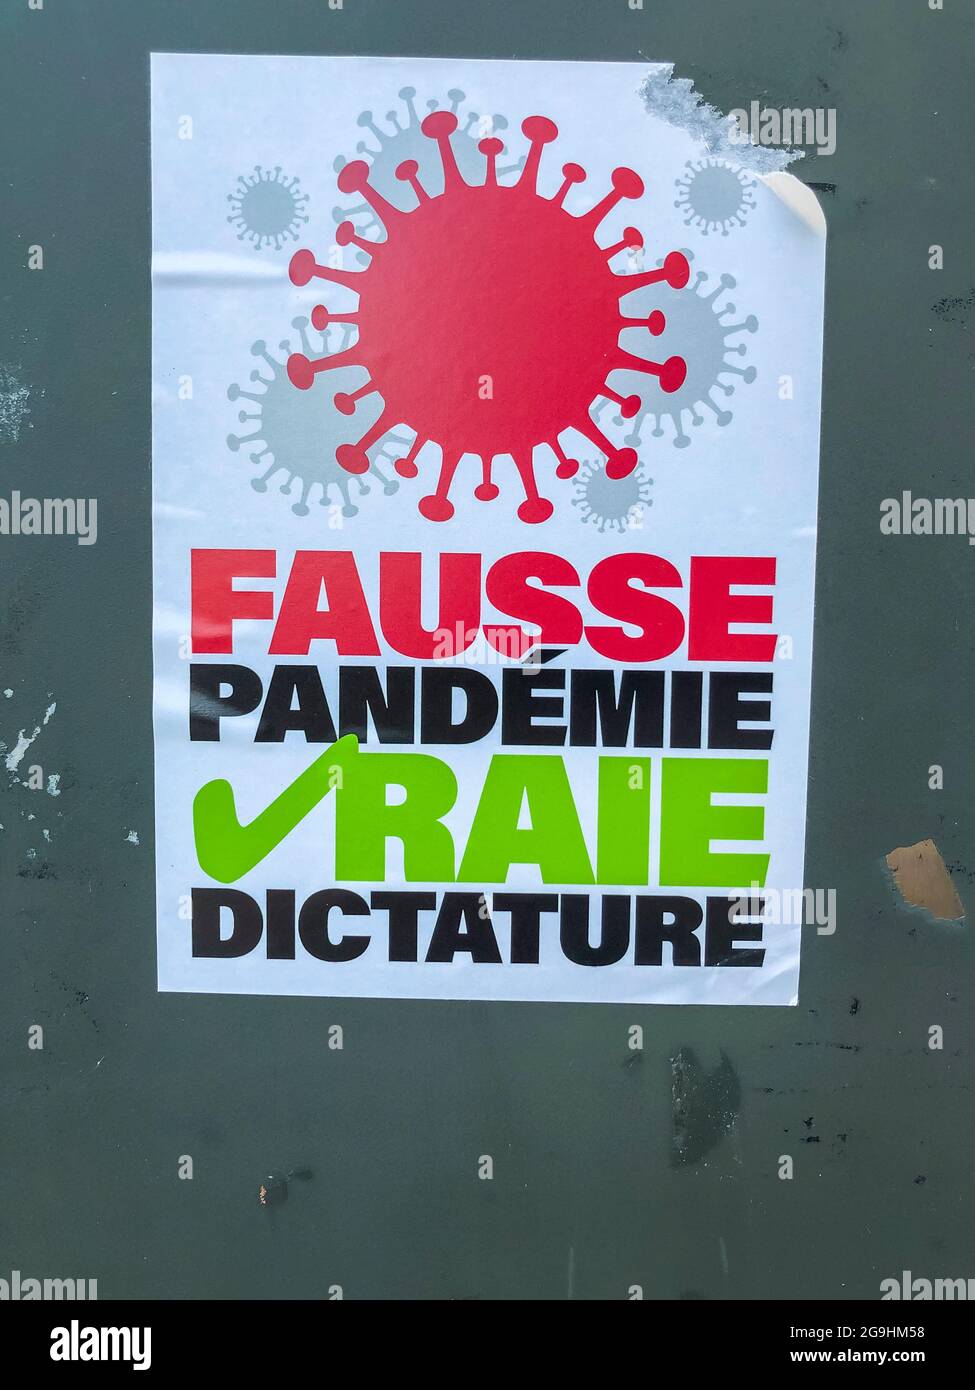 Strasburgo, Francia, dettaglio, adesivo sul muro, slogan vaccinazioni anti-Covid 'False Pandemic, Real Dictature' virus Anti-Pass Rules, disinformazione, poster SUL MURO, informazioni errate, sfide per la salute pubblica Foto Stock